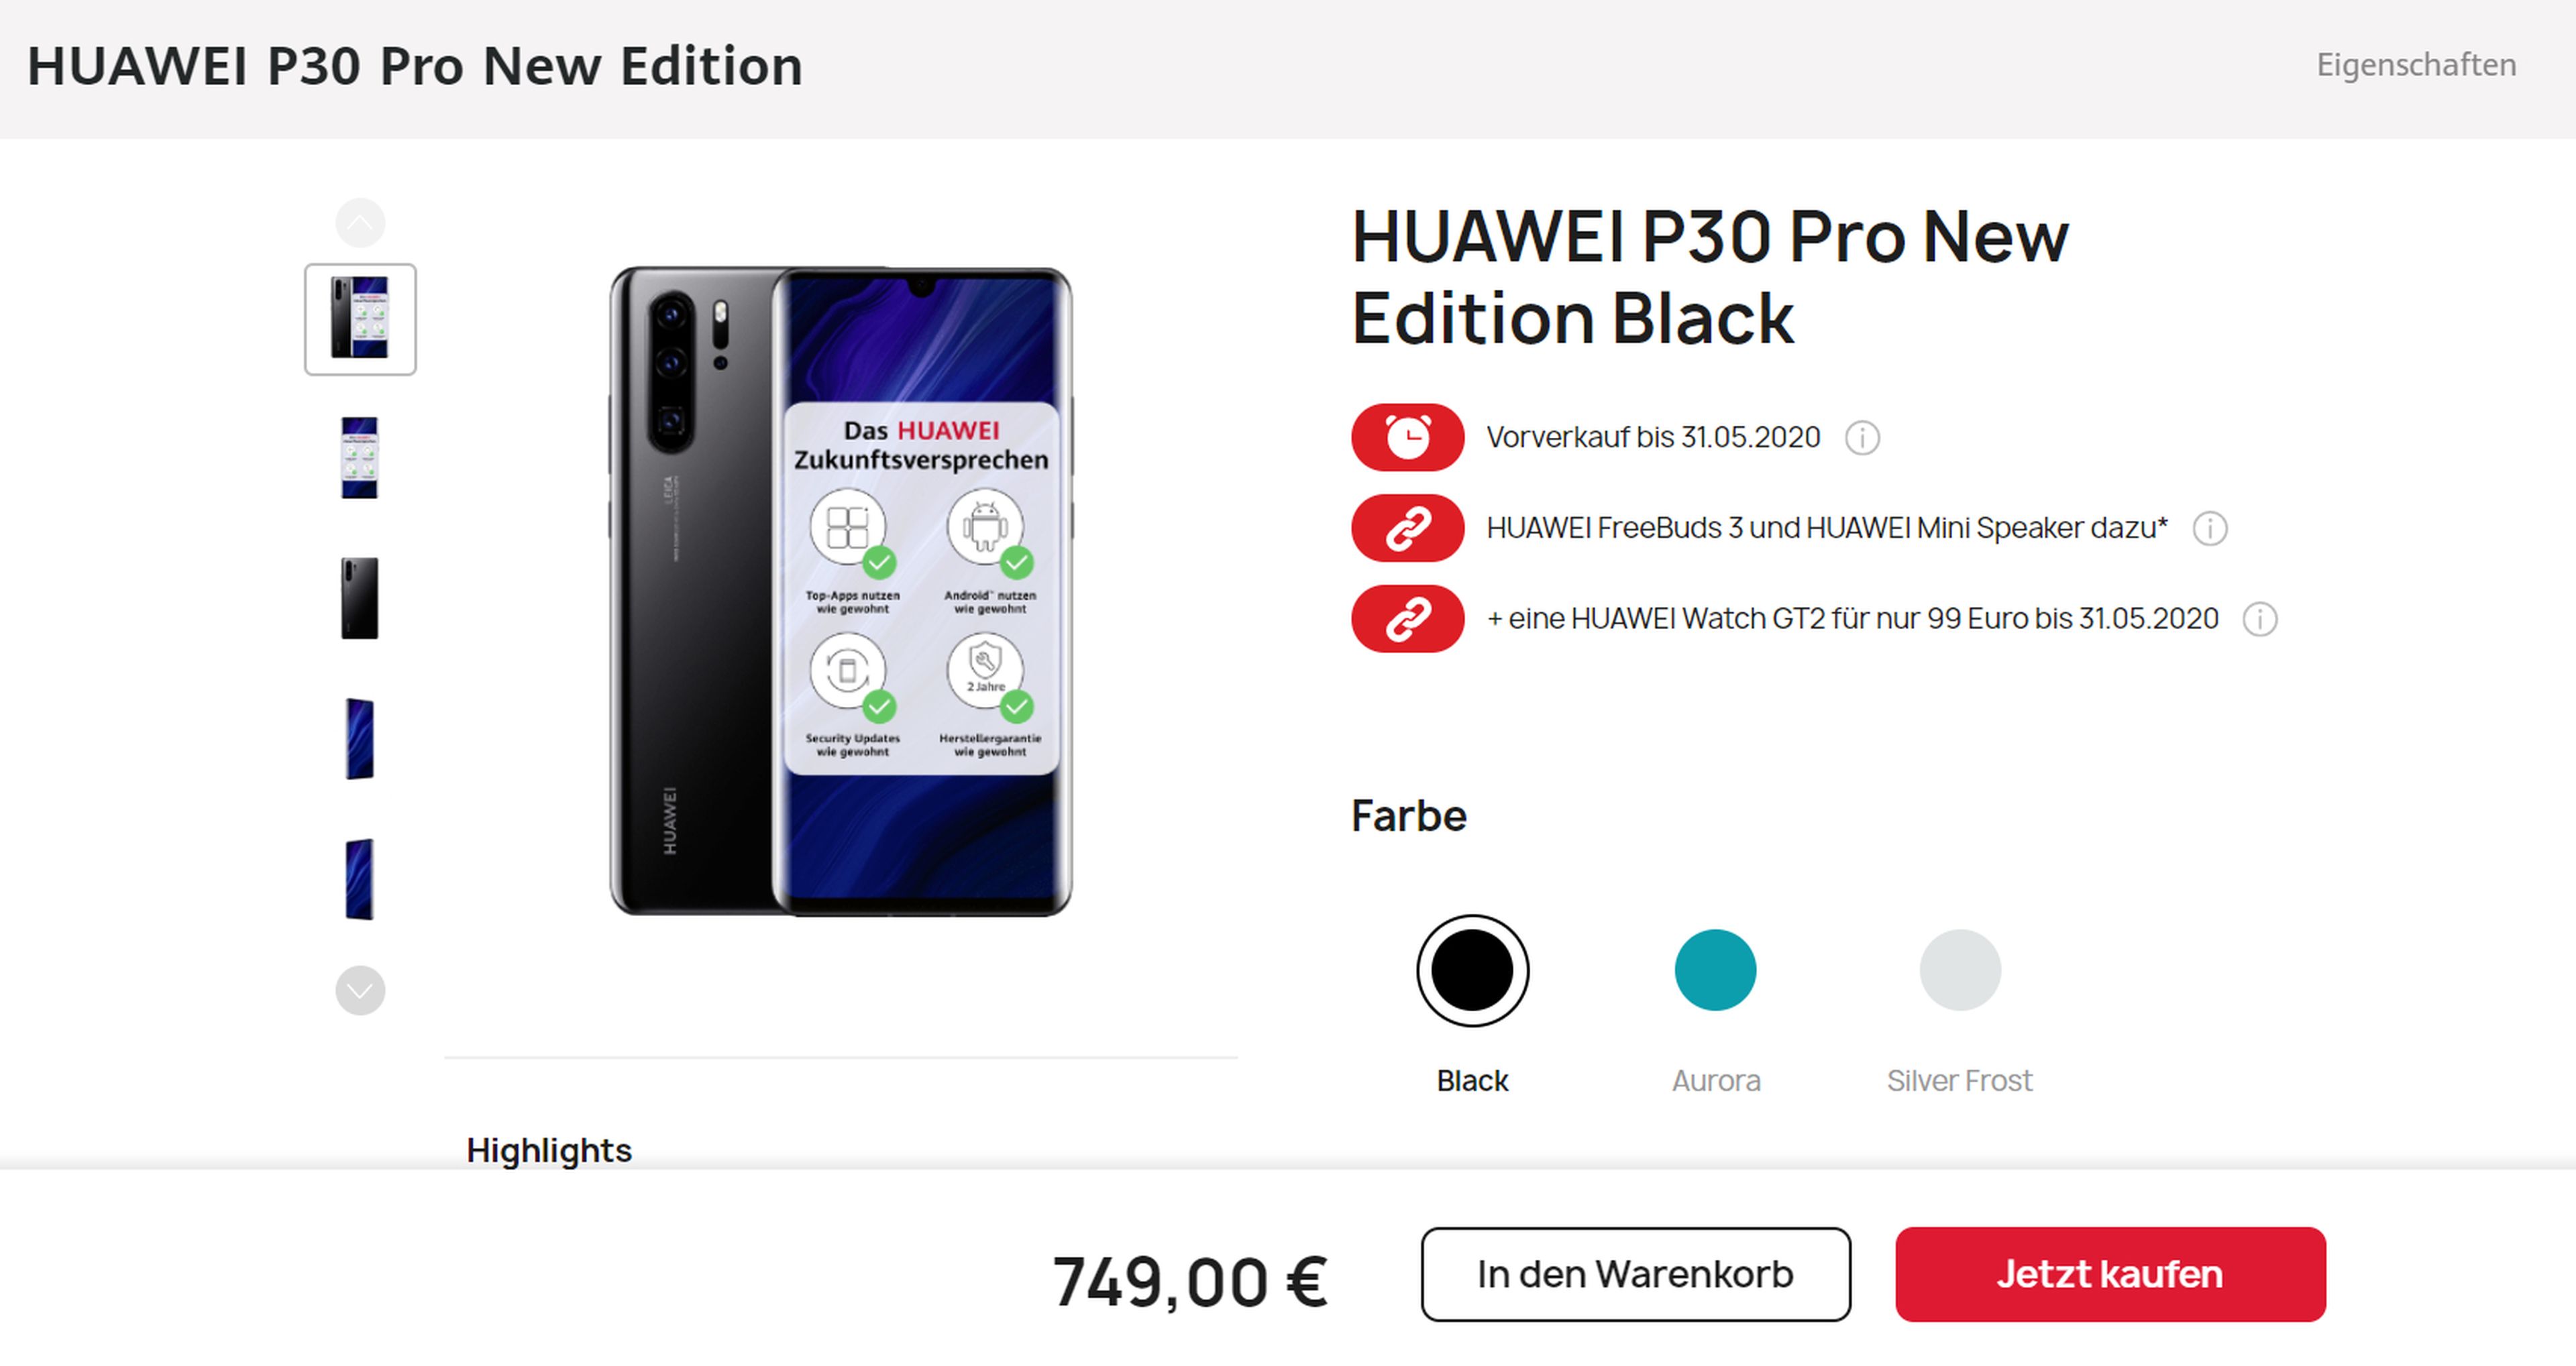 El Huawei P30 Pro New Edition llega a España: estos son su precio